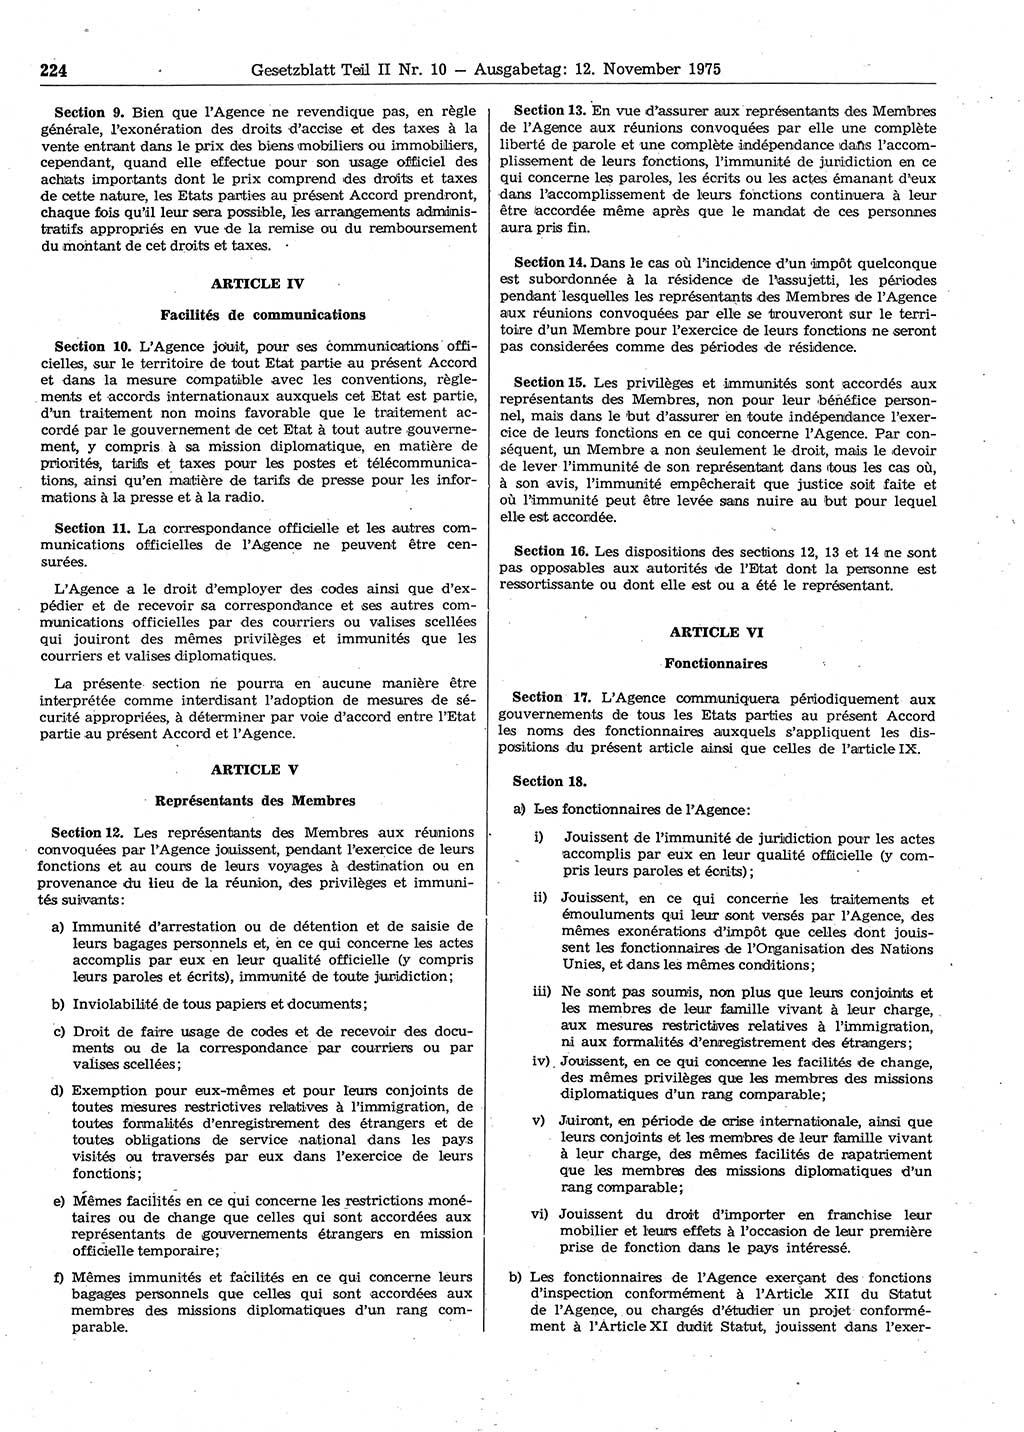 Gesetzblatt (GBl.) der Deutschen Demokratischen Republik (DDR) Teil ⅠⅠ 1975, Seite 224 (GBl. DDR ⅠⅠ 1975, S. 224)